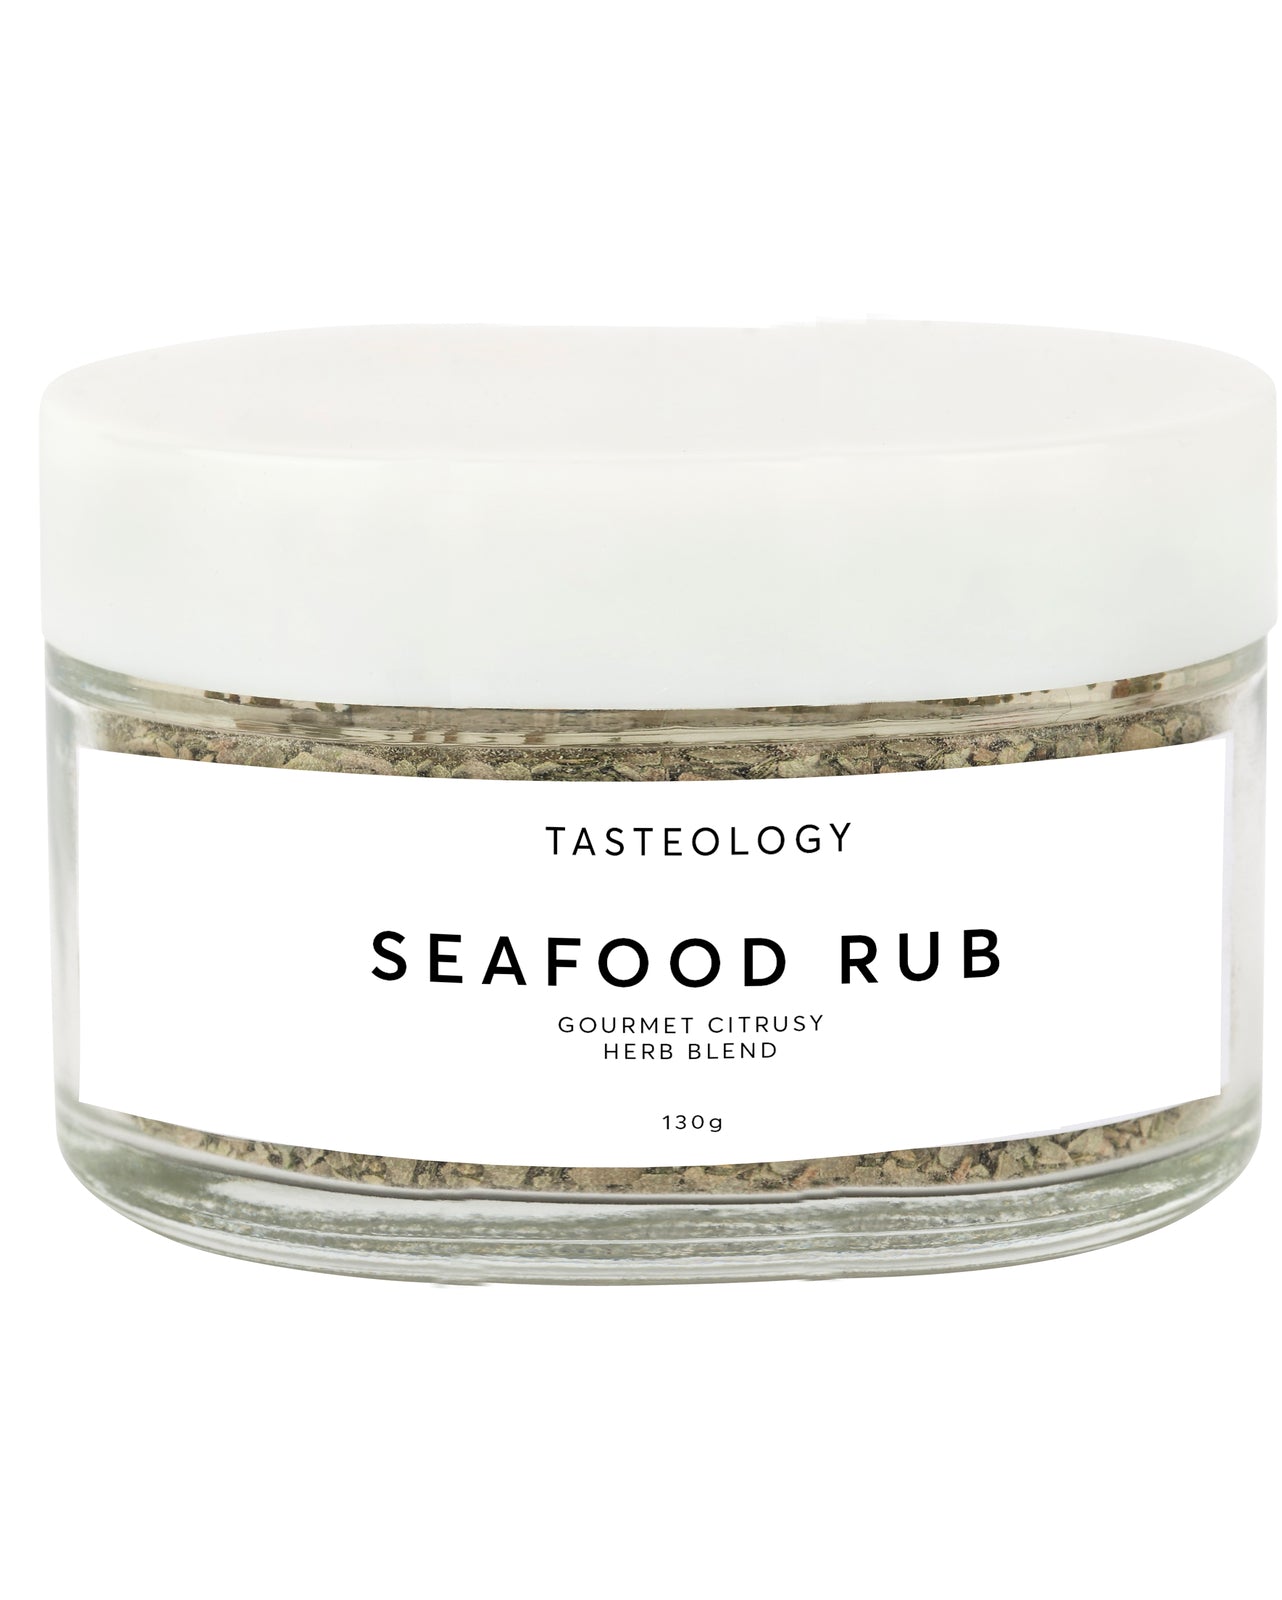 TASTEOLOGY Seafood Rub